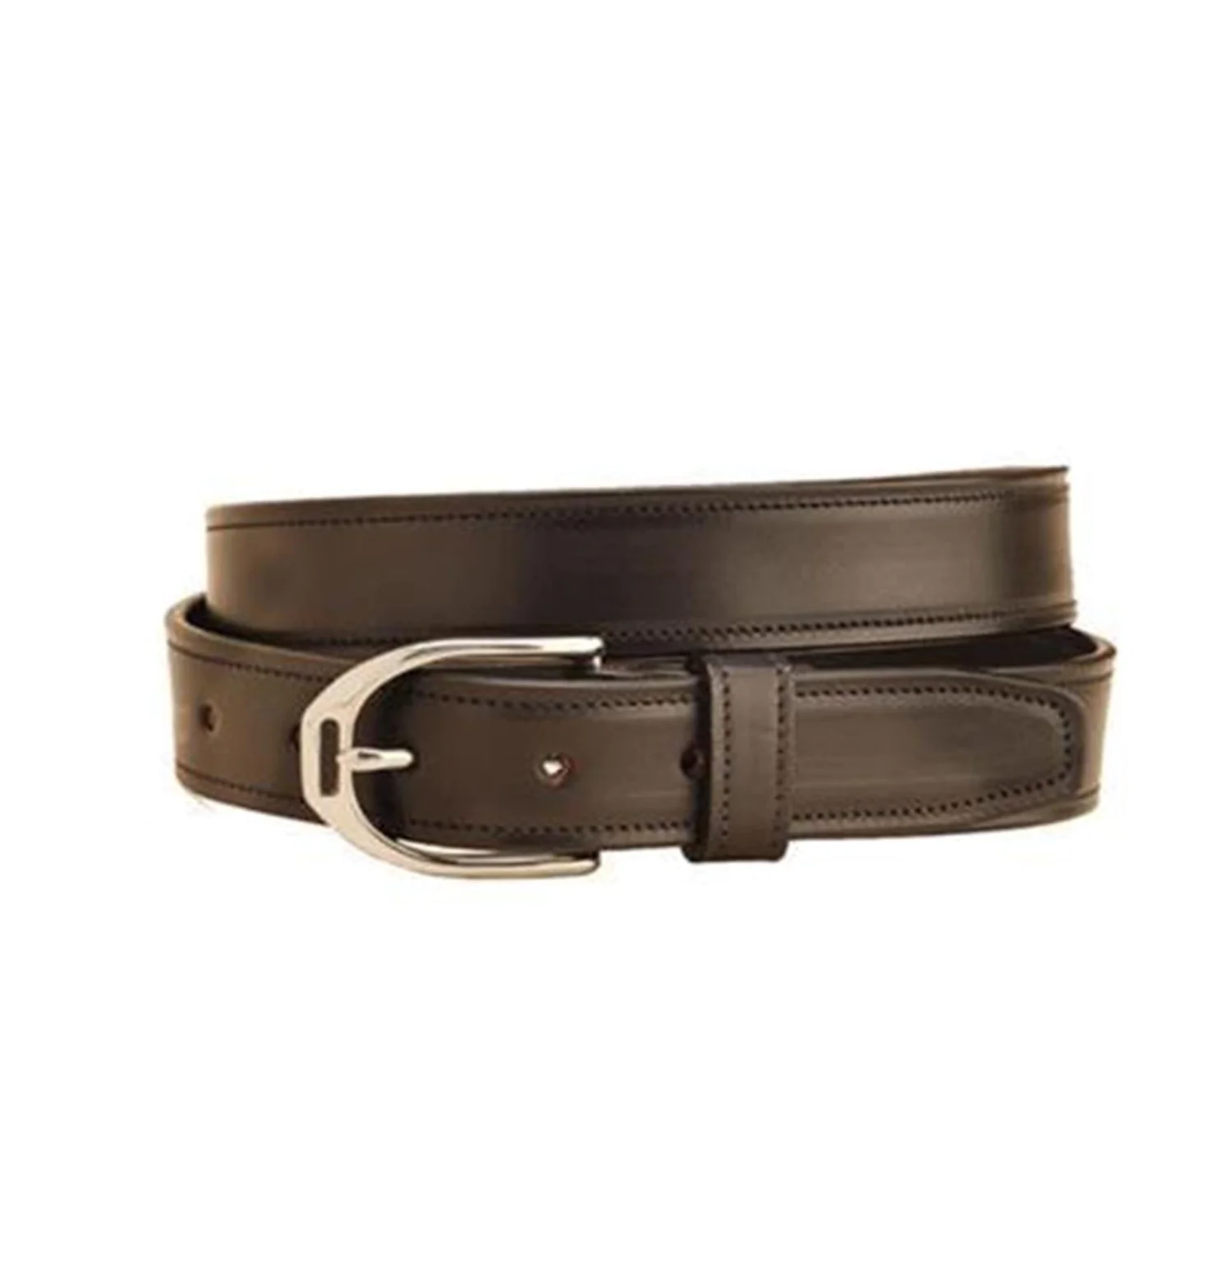 Lory buckle belt